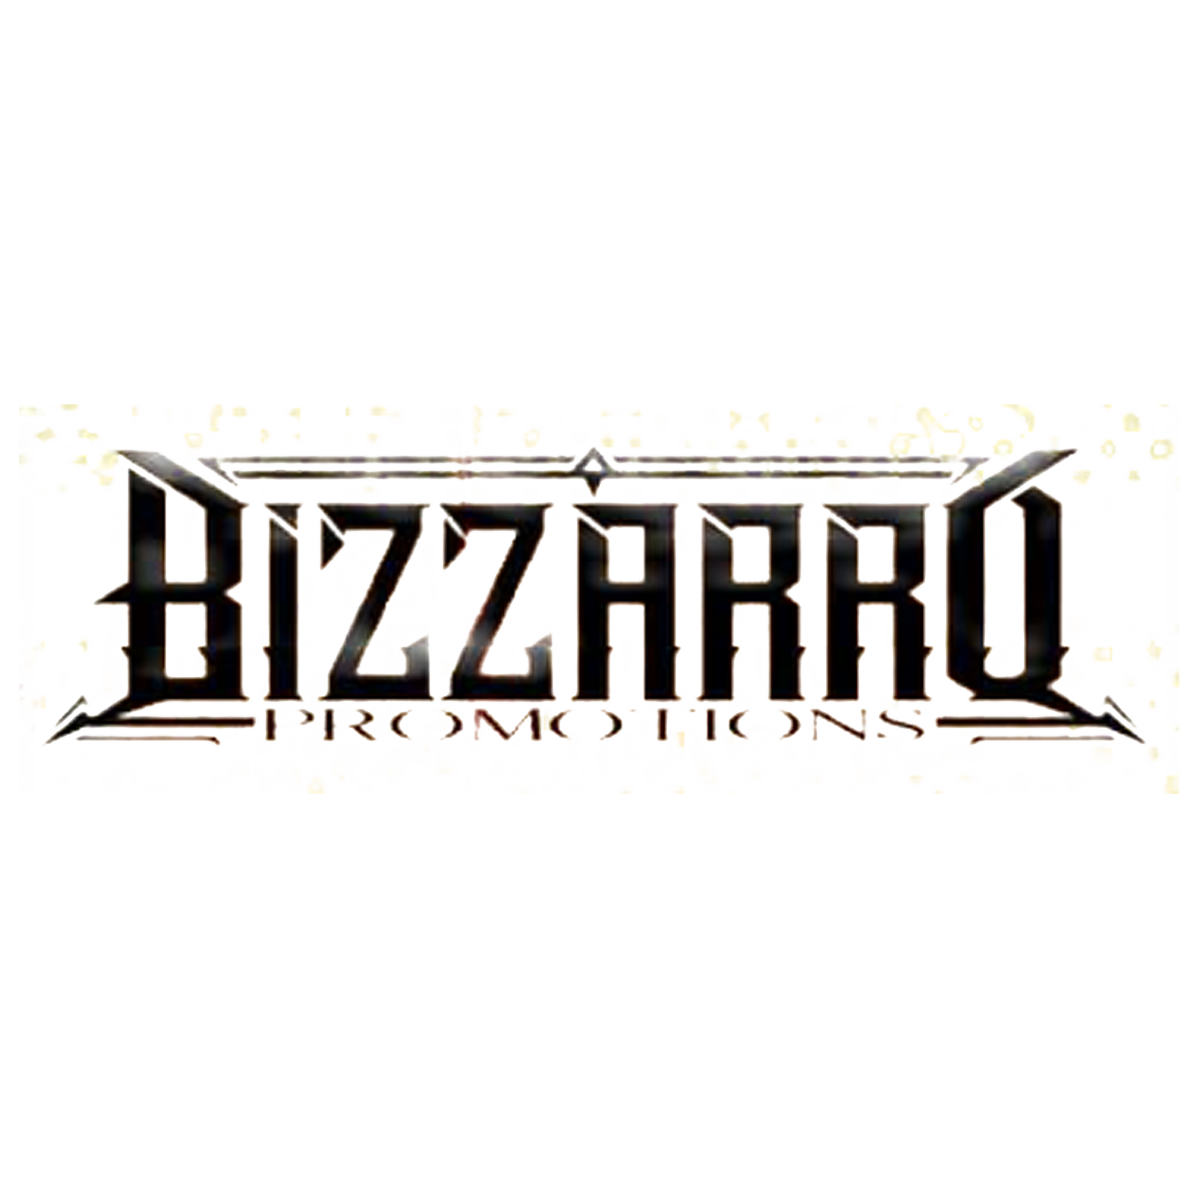 Bizzarro's Boxing & MMA Promotions